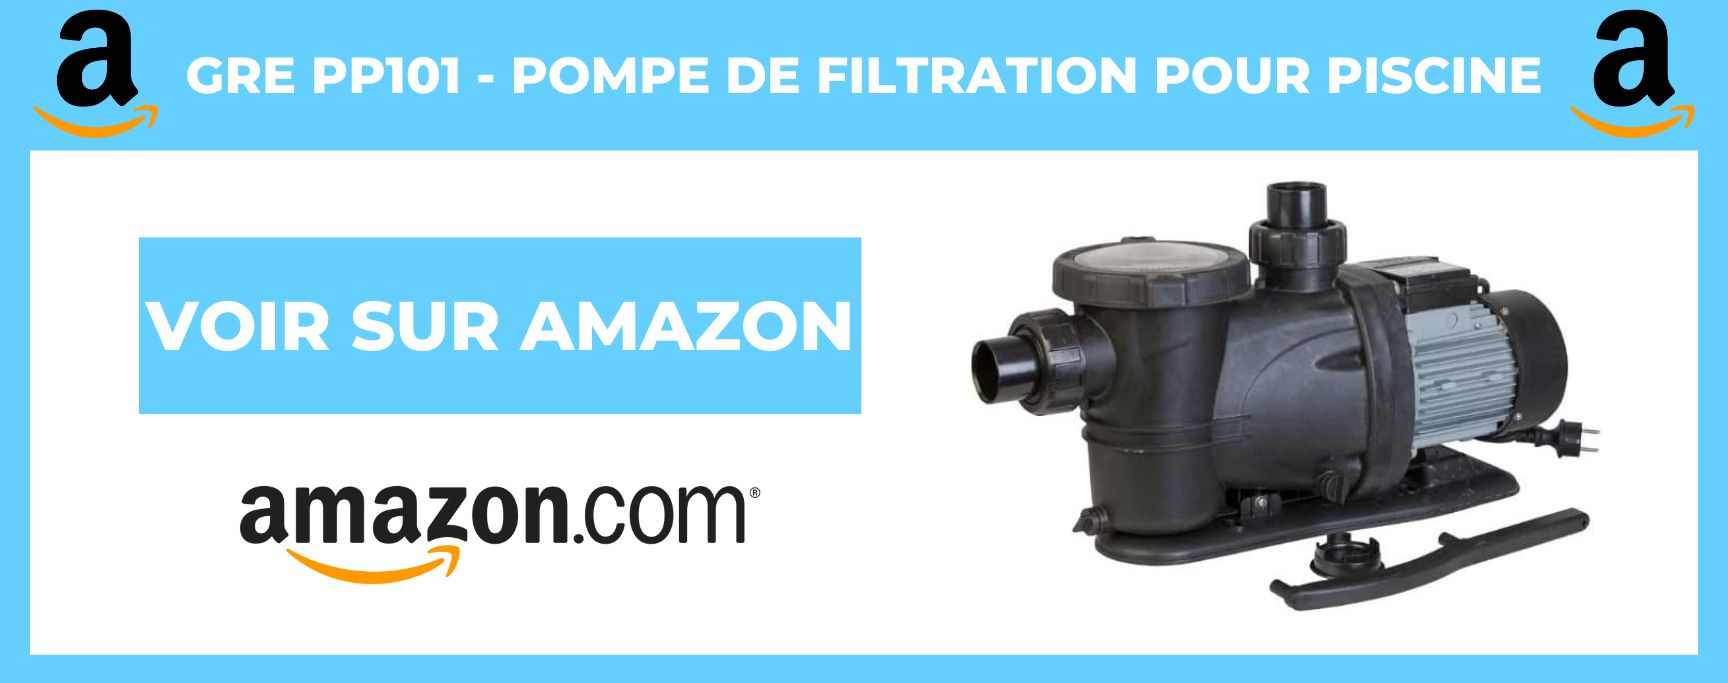 Gre PP101 - Pompe de Filtration pour Piscine